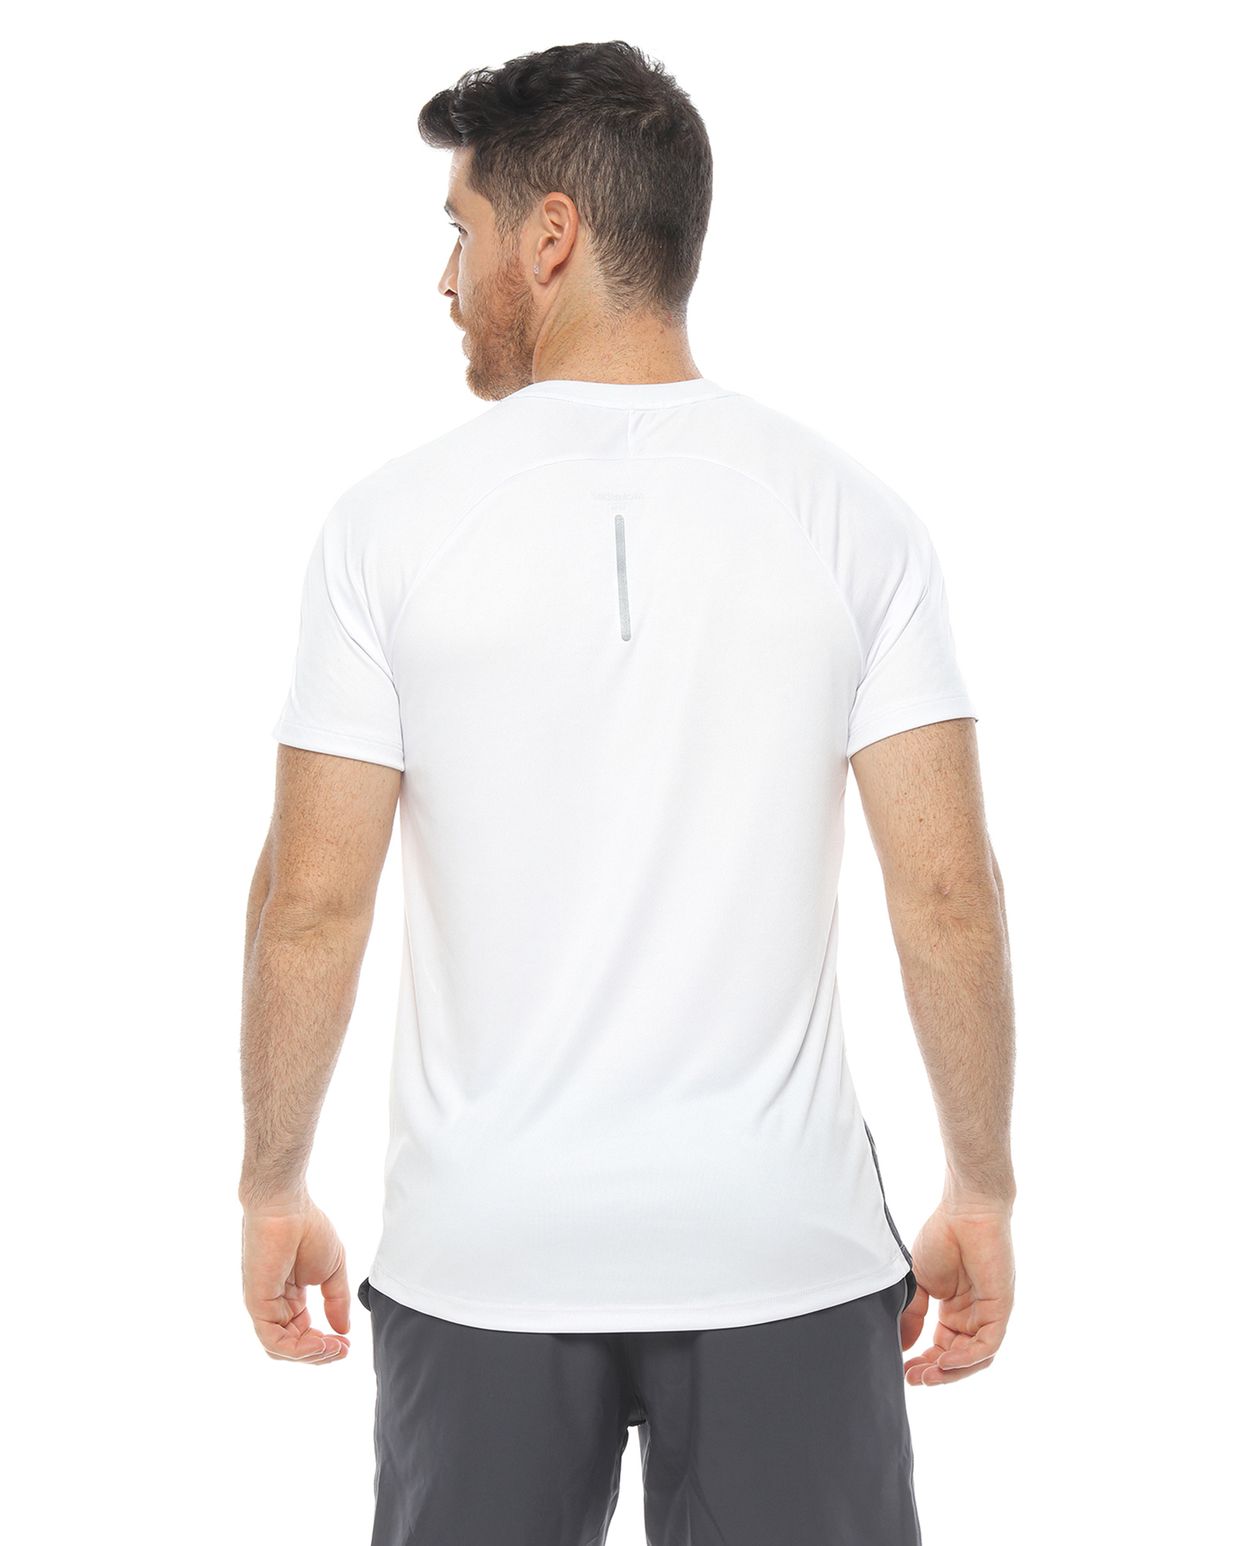 espectro Comunista Maquinilla de afeitar Camiseta deportiva hombre, color blanco/gris - racketball movil